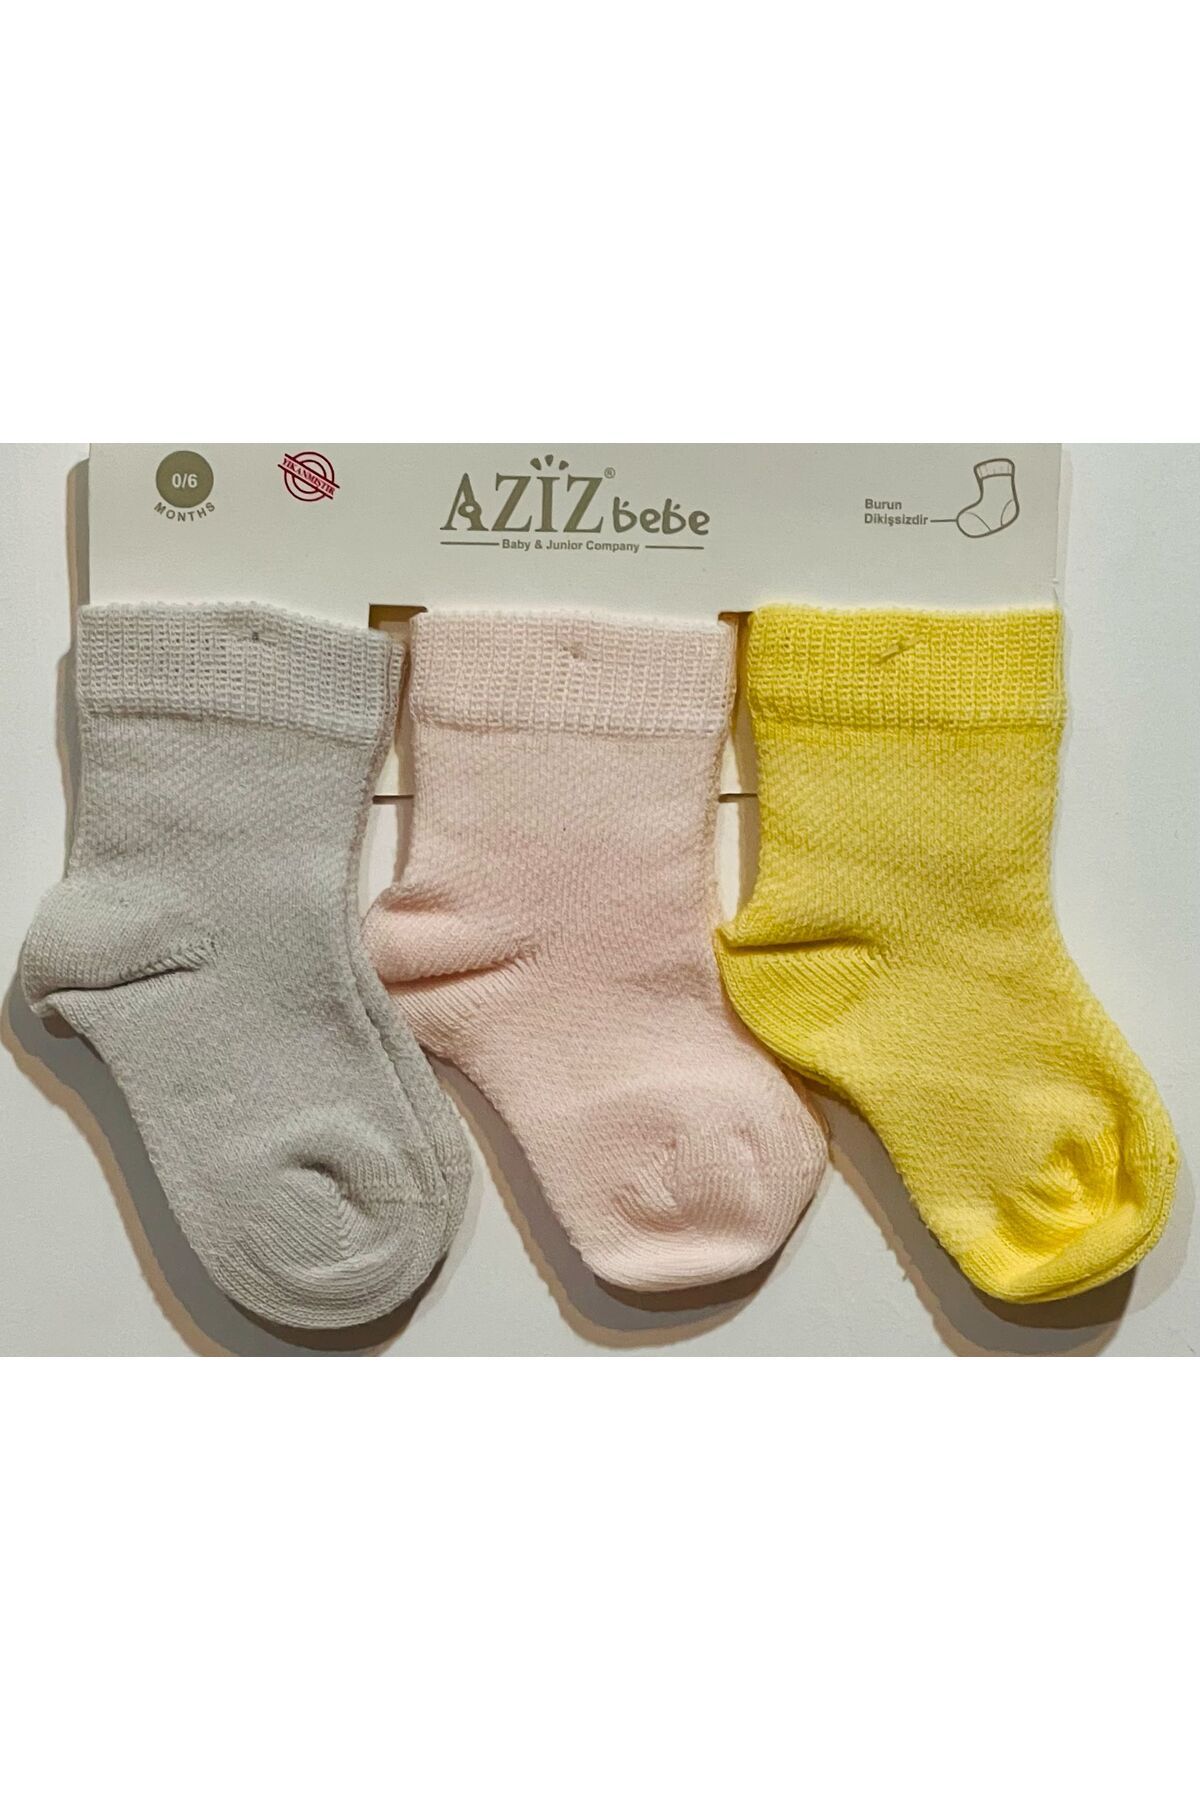 Aziz Bebe 3'lü Çorap Kız Çocuk Somon